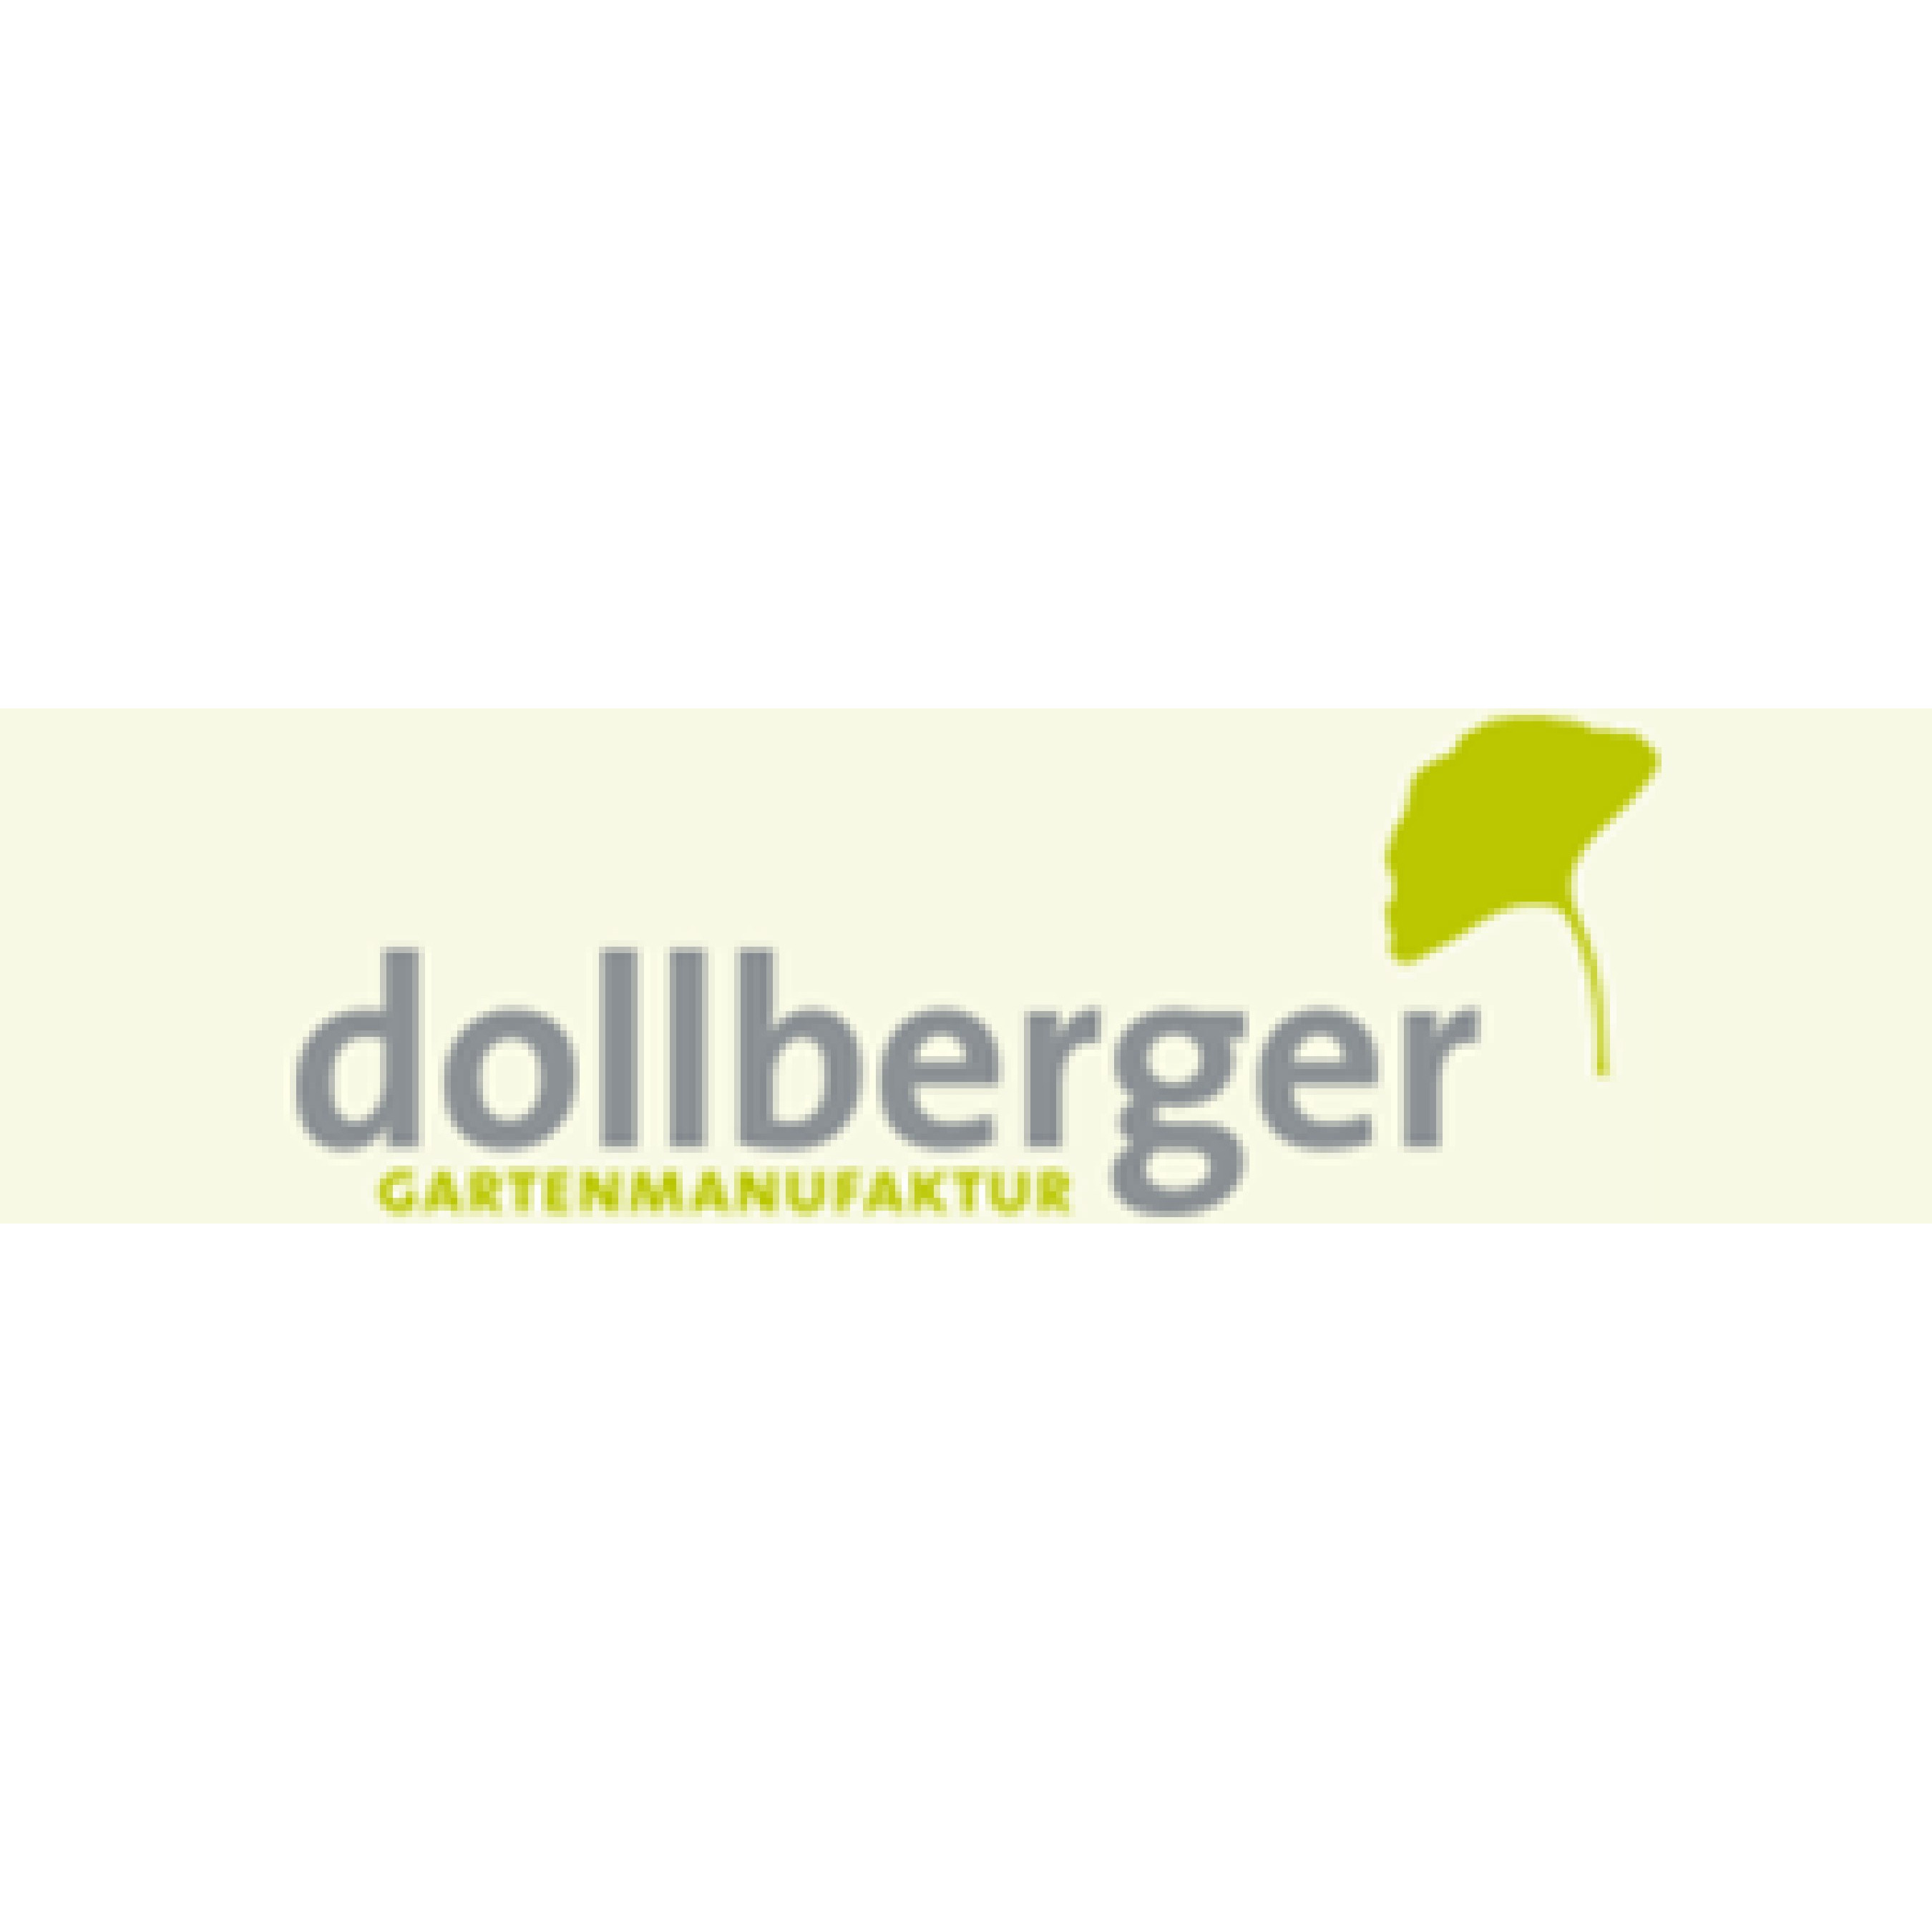 Dollberger Gartenmanufaktur - Gartengestaltung - Naturpool - Schwimmteich Logo